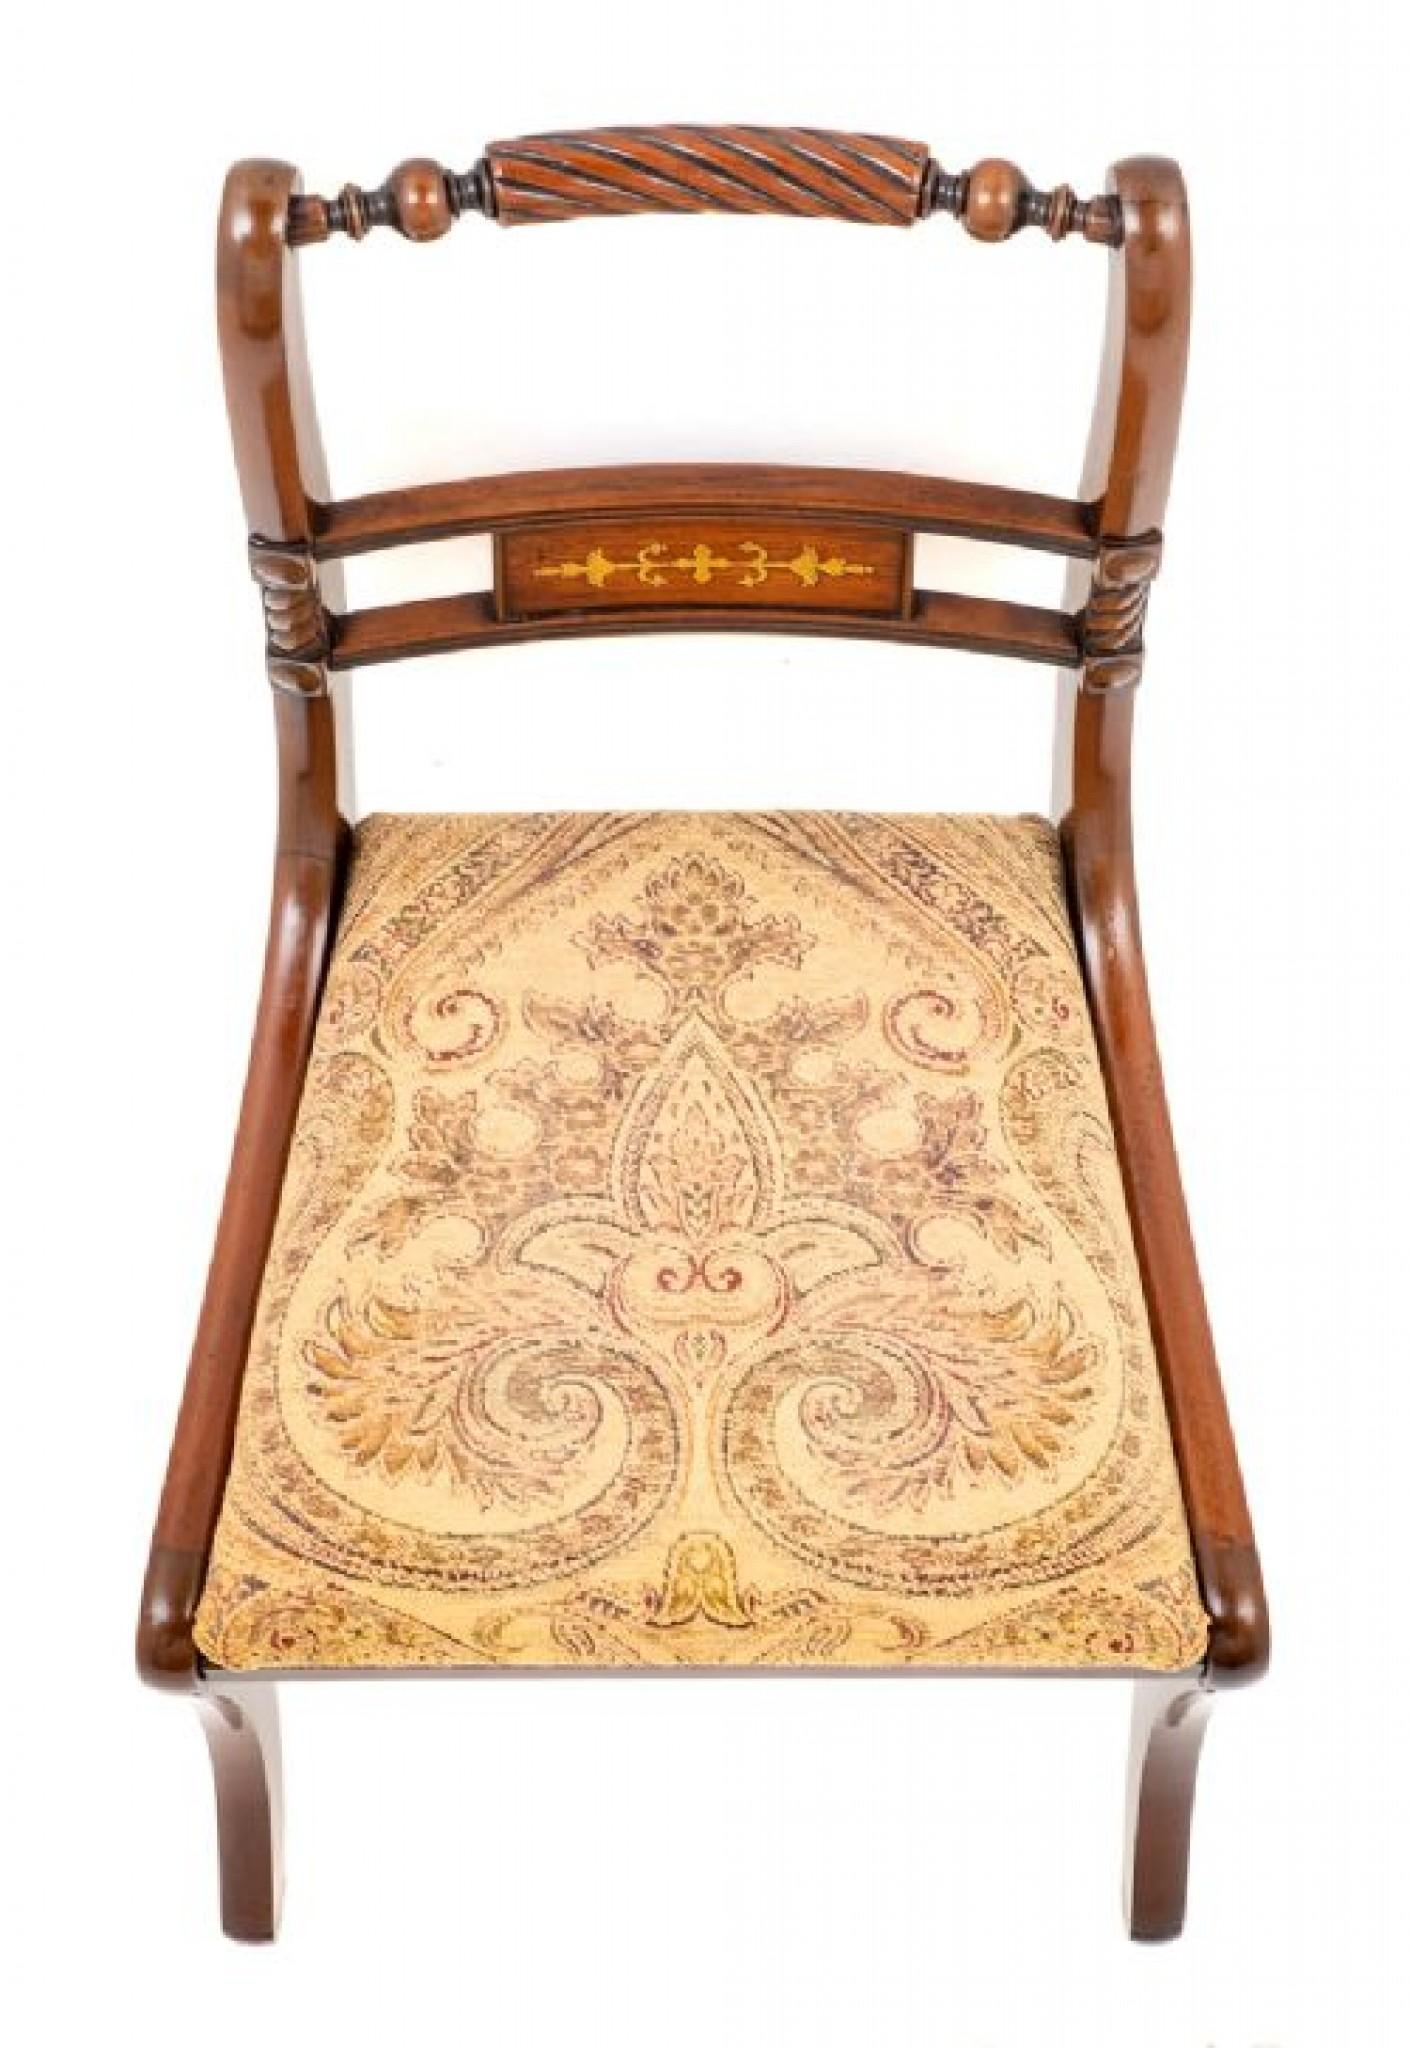 Satz von 8 (6 + 2) Stühlen aus Mahagoni mit Messingintarsien im Regency-Stil.
Diese Stühle haben die typischen Säbelbeine vorne und hinten.
Die Stühle wurden vor kurzem neu gepolstert und mit herausnehmbaren Sitzen versehen.
Mit Seildrehung und